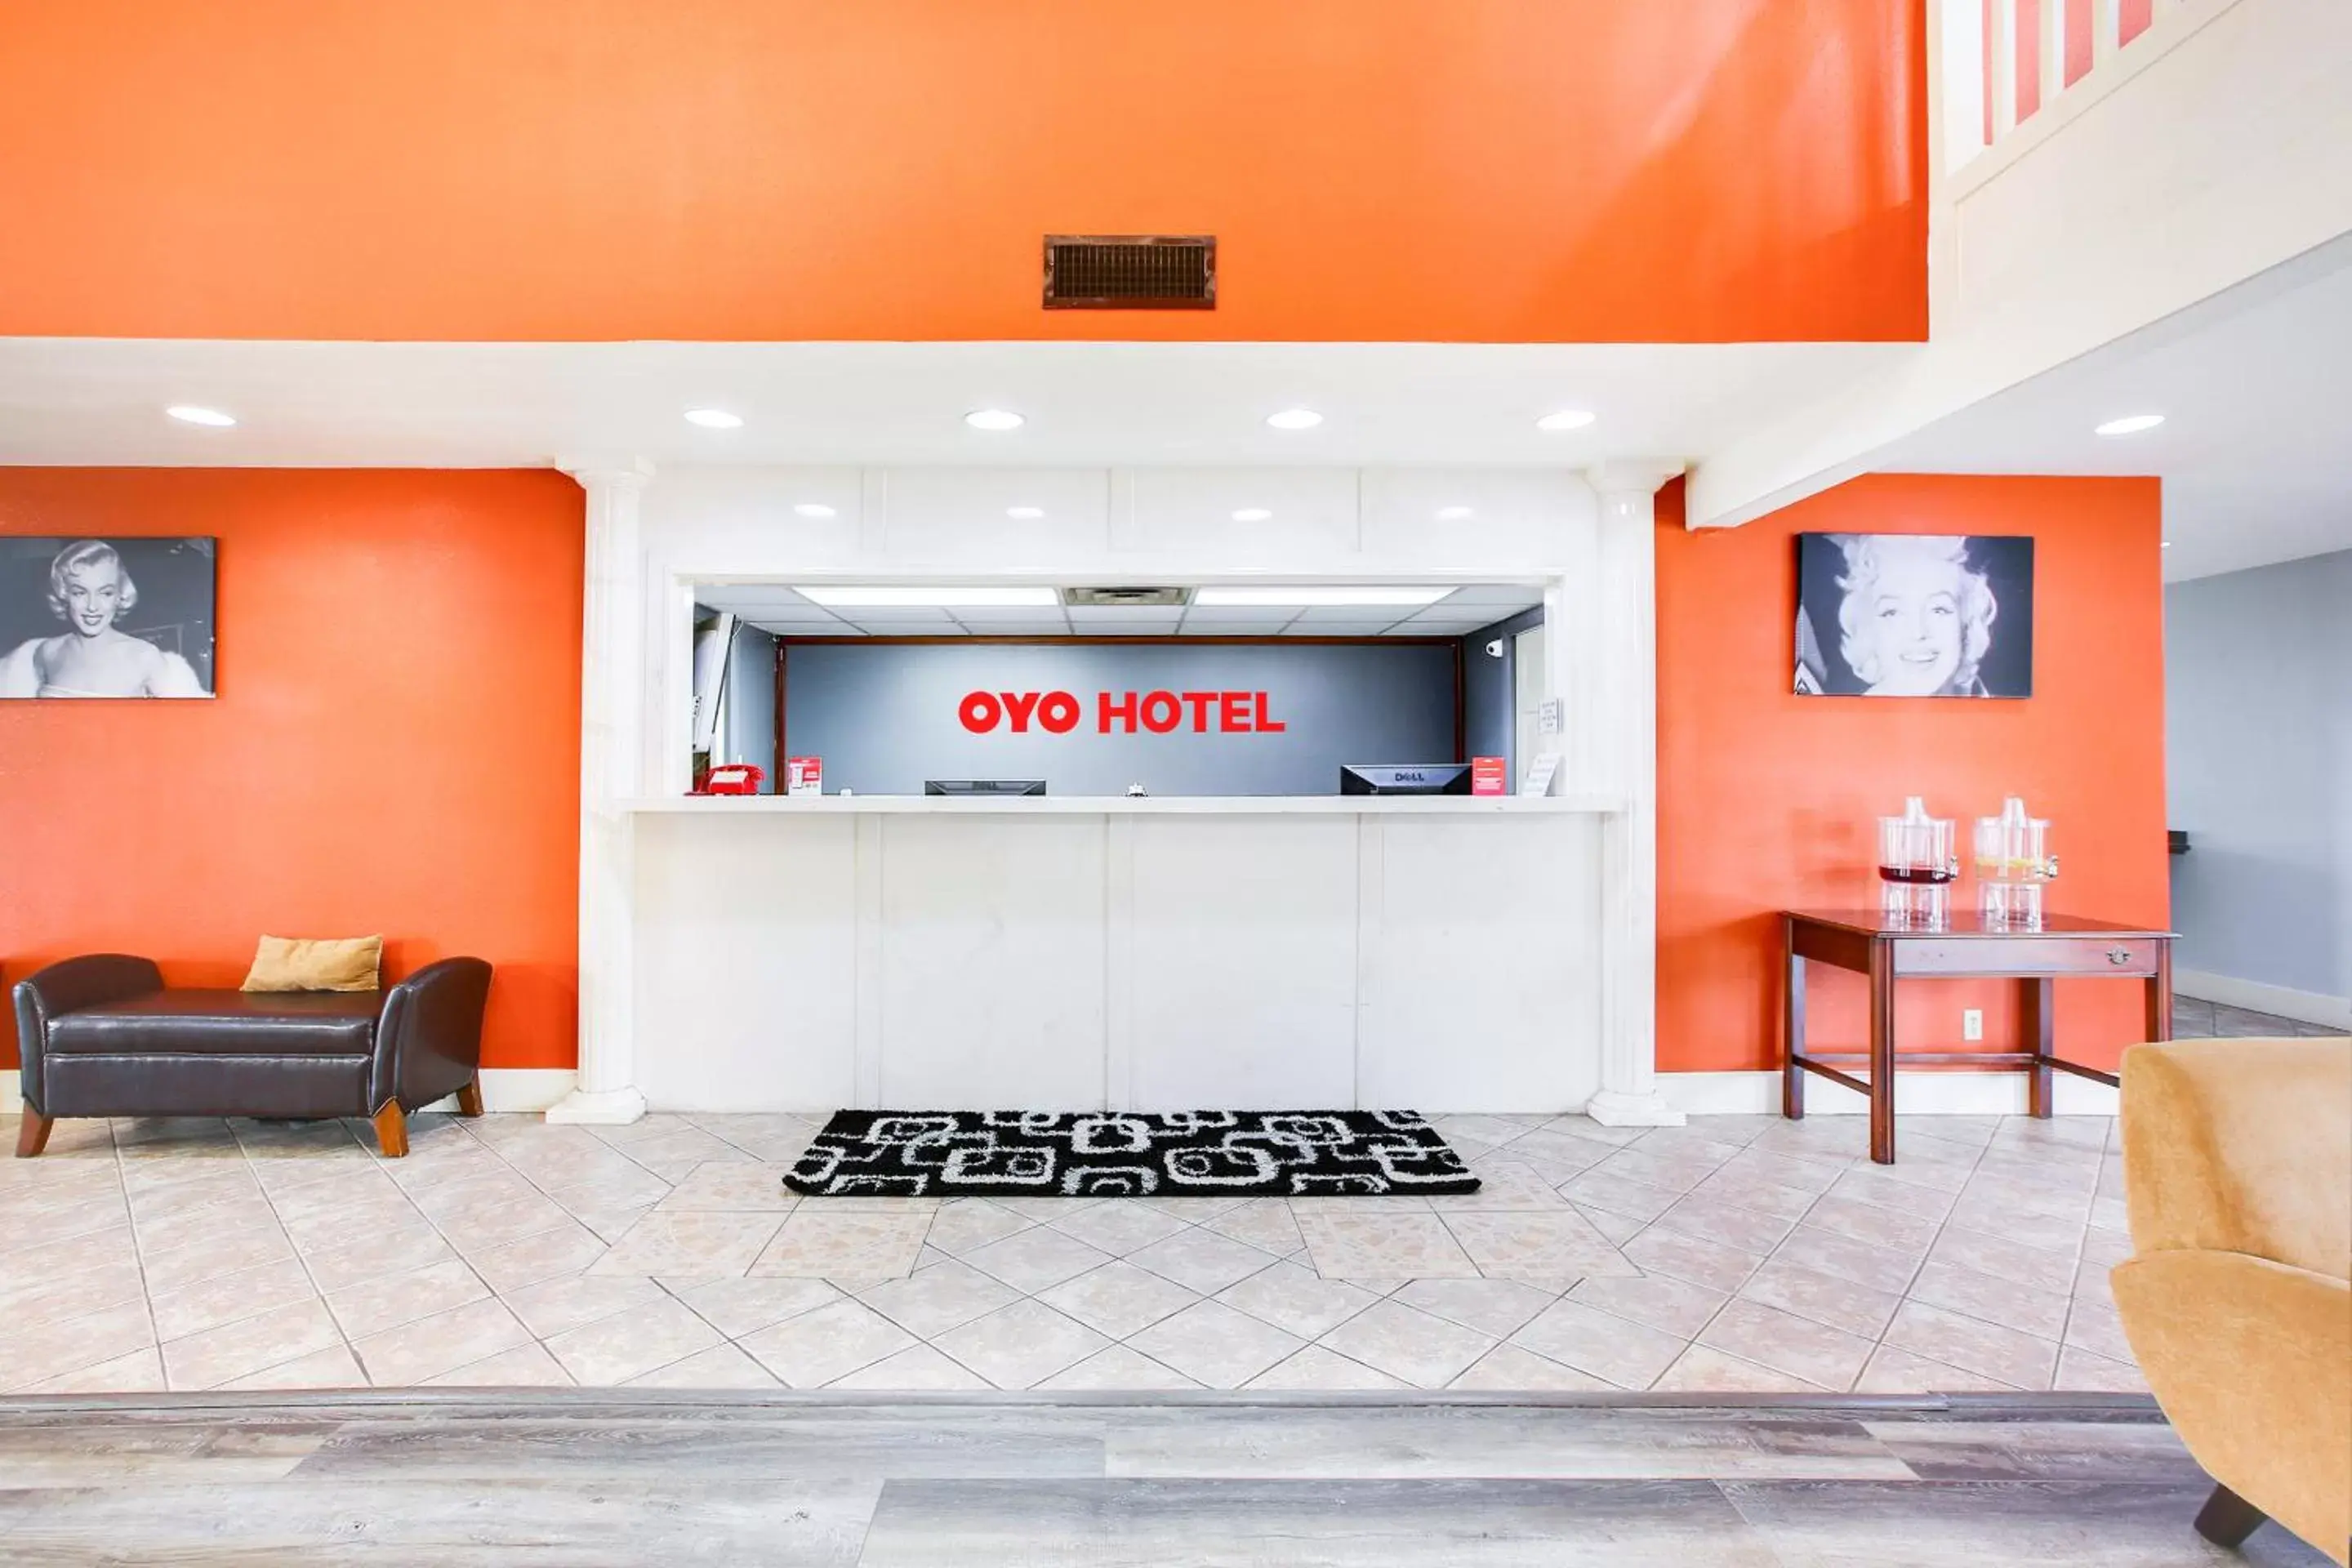 Lobby or reception in OYO Hotel Texarkana Trinity AR Hwy I-30